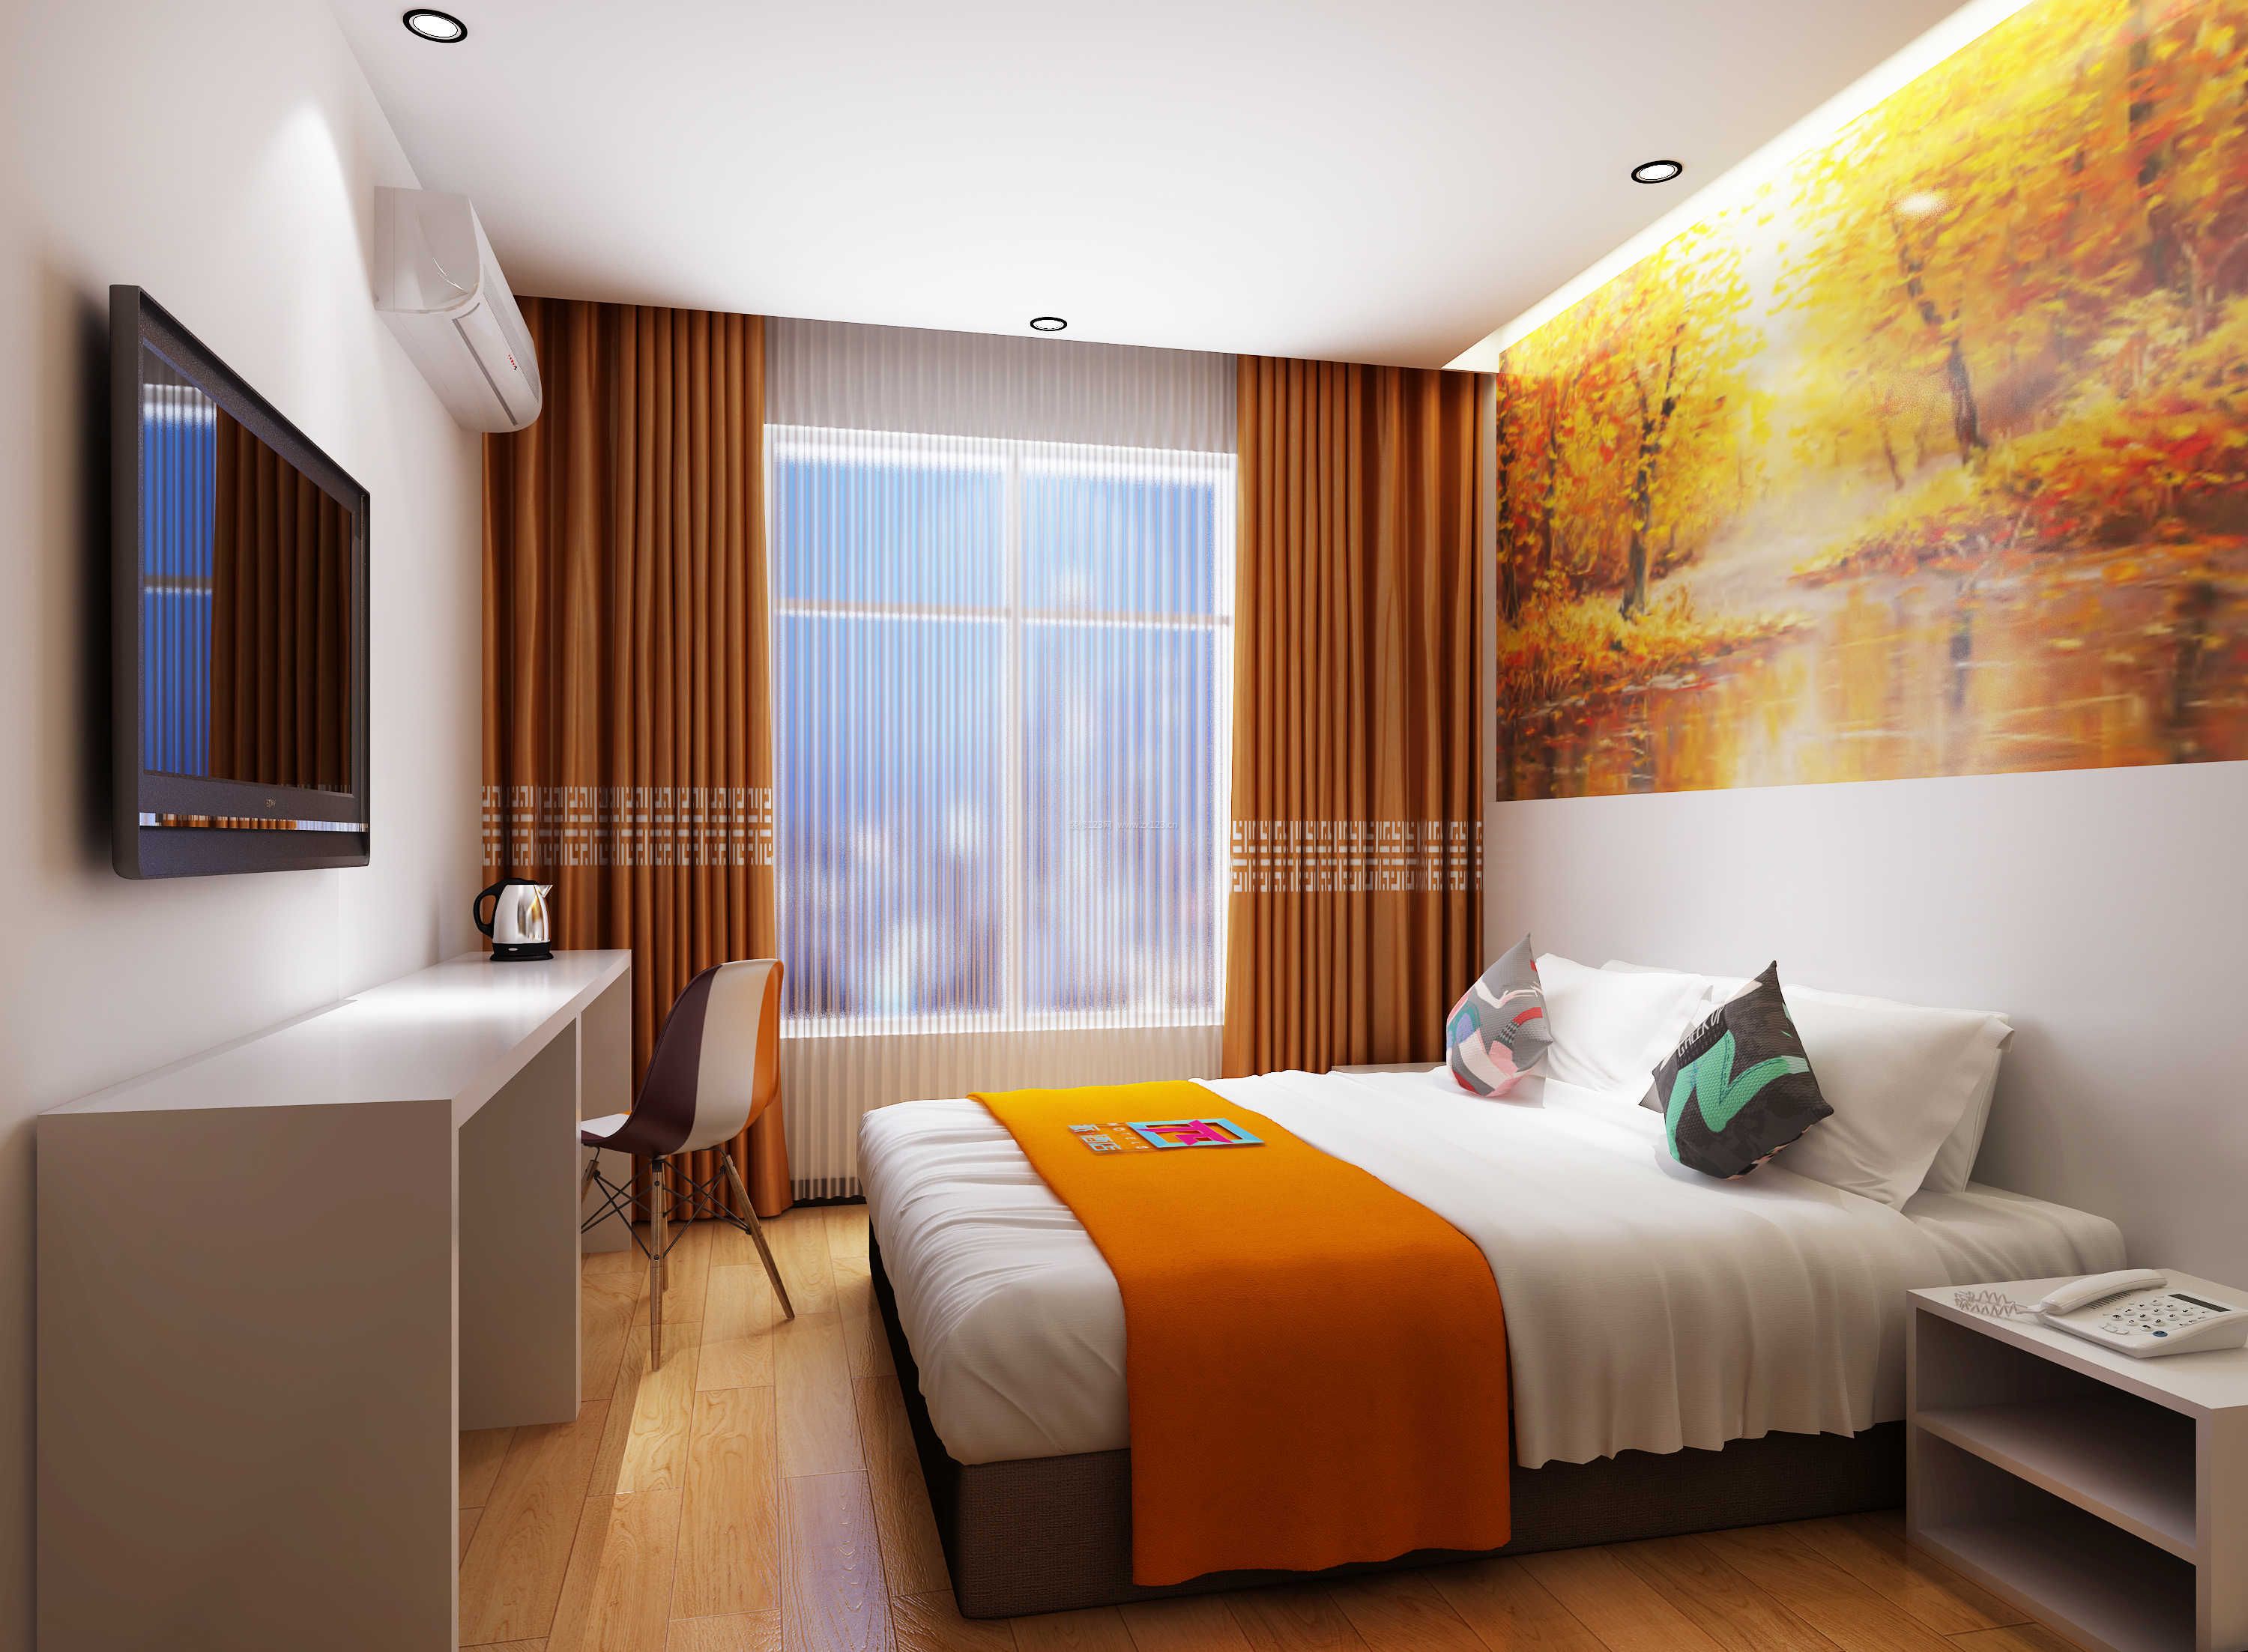 2020酒店客房布置图片 2020木地板装修图片